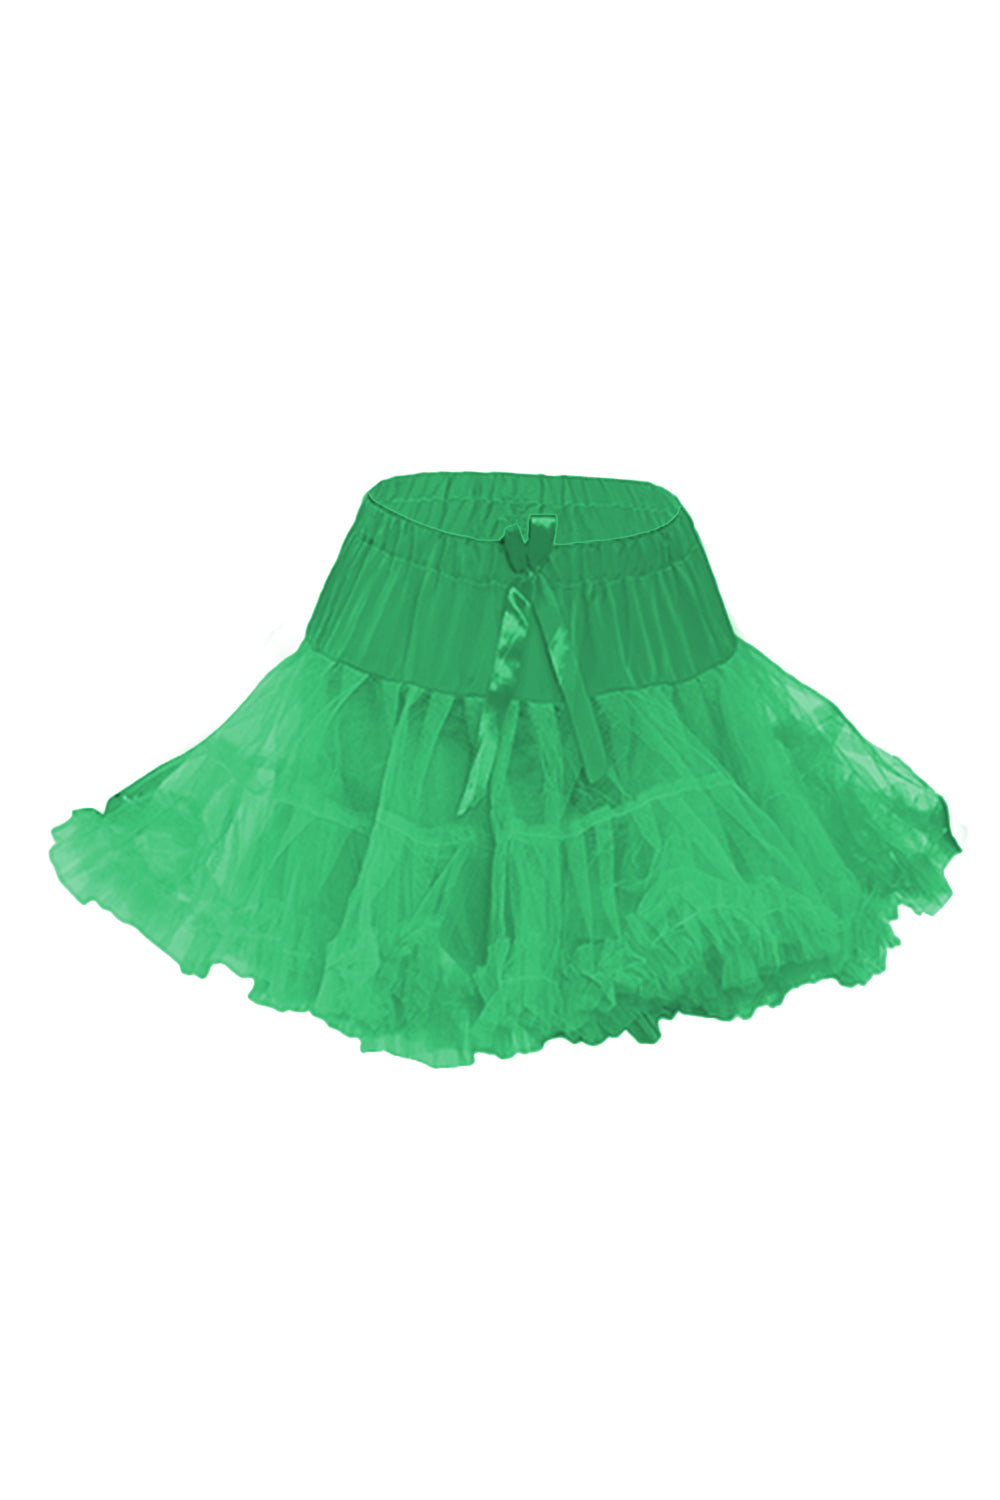 Crazy Chick Girl  Ruffle Petticoat Tutu Skirt